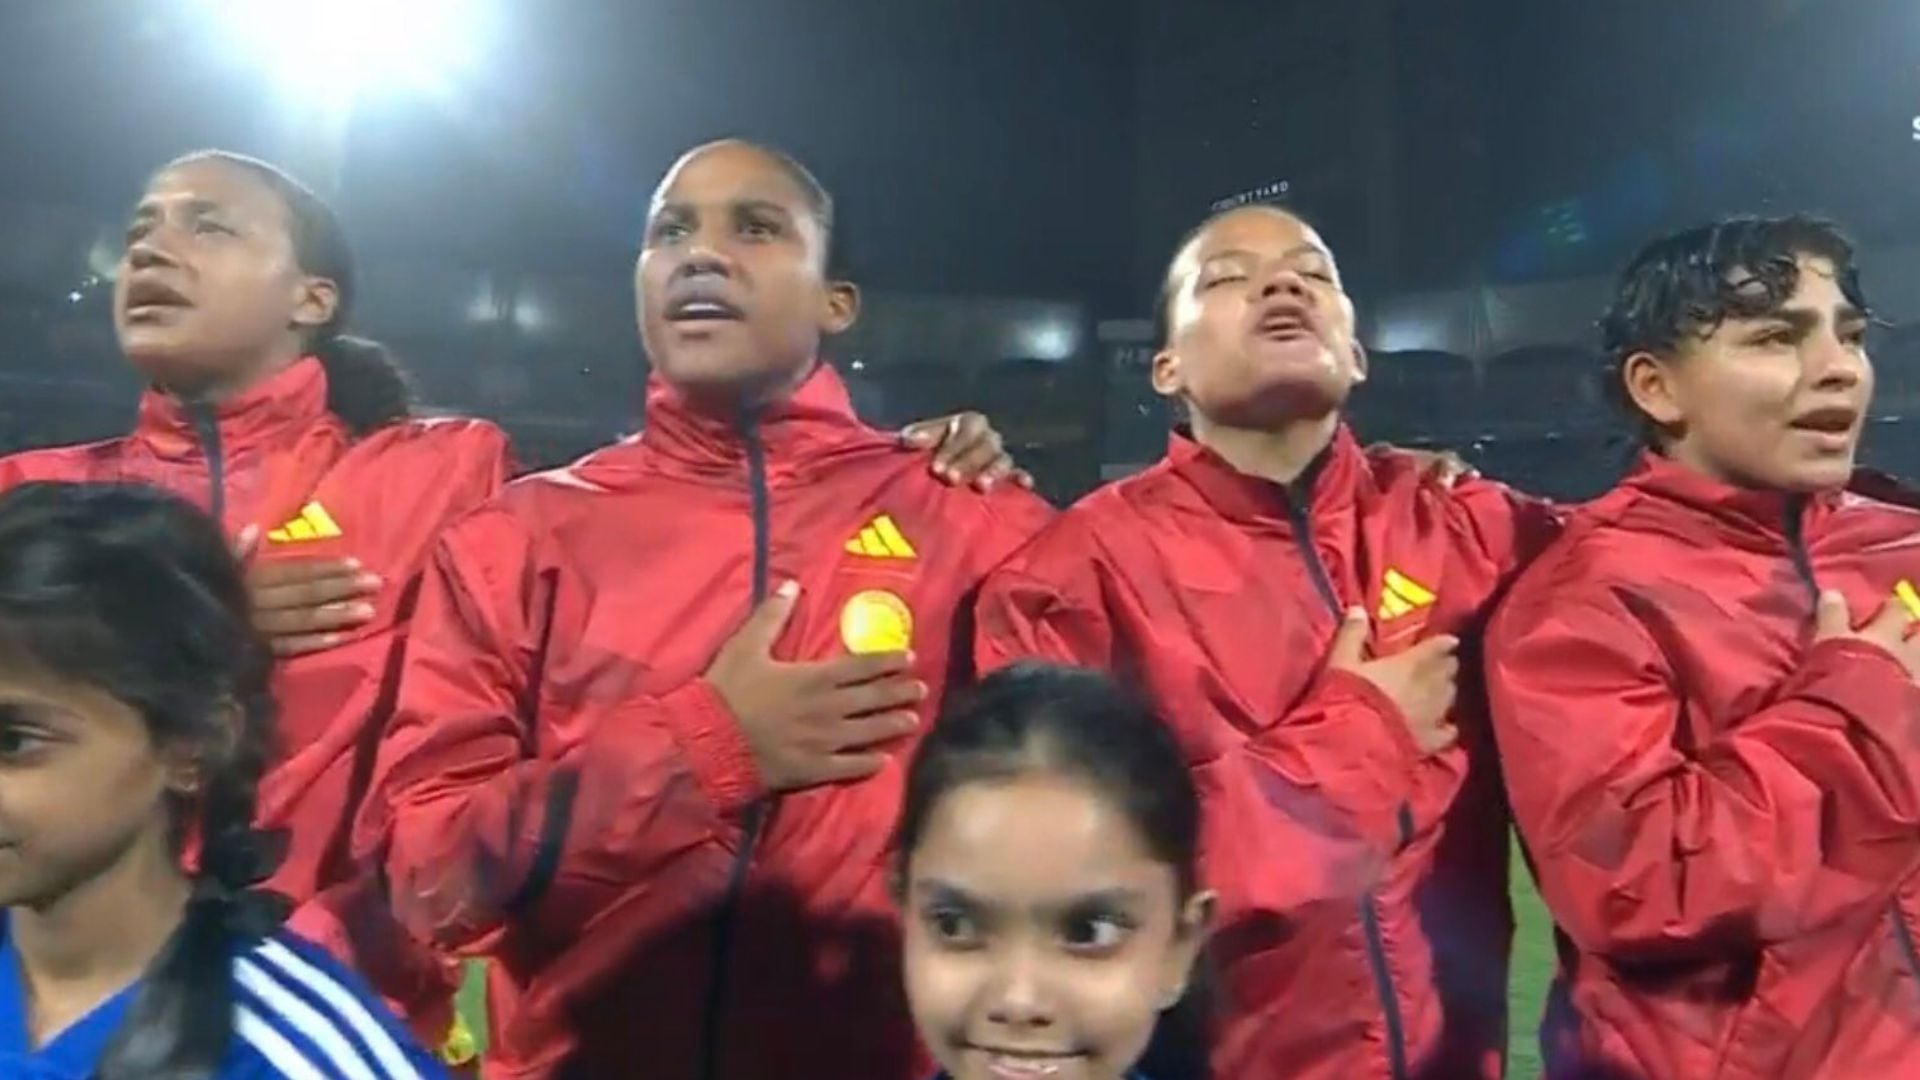 Emocionante el sonido del himno de Colombia en la final del Mundial de la India.